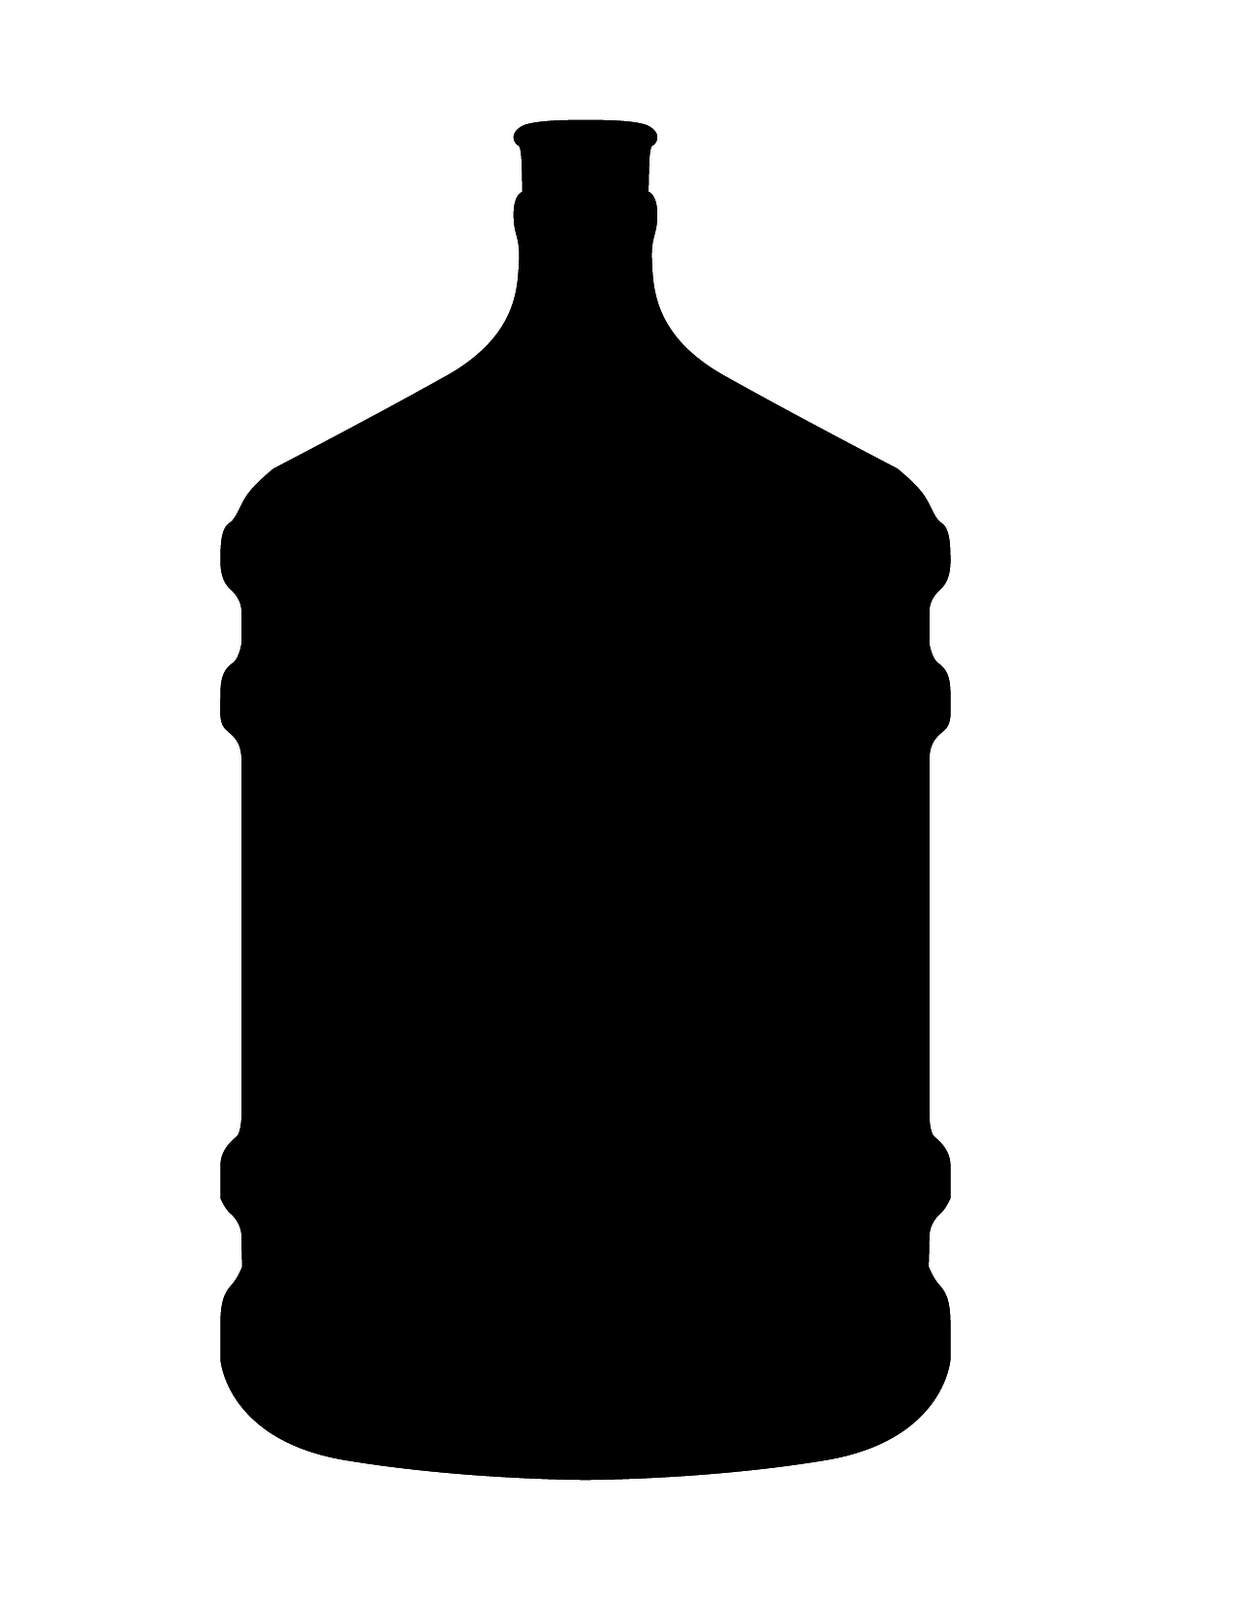 Water bottle silhouette.